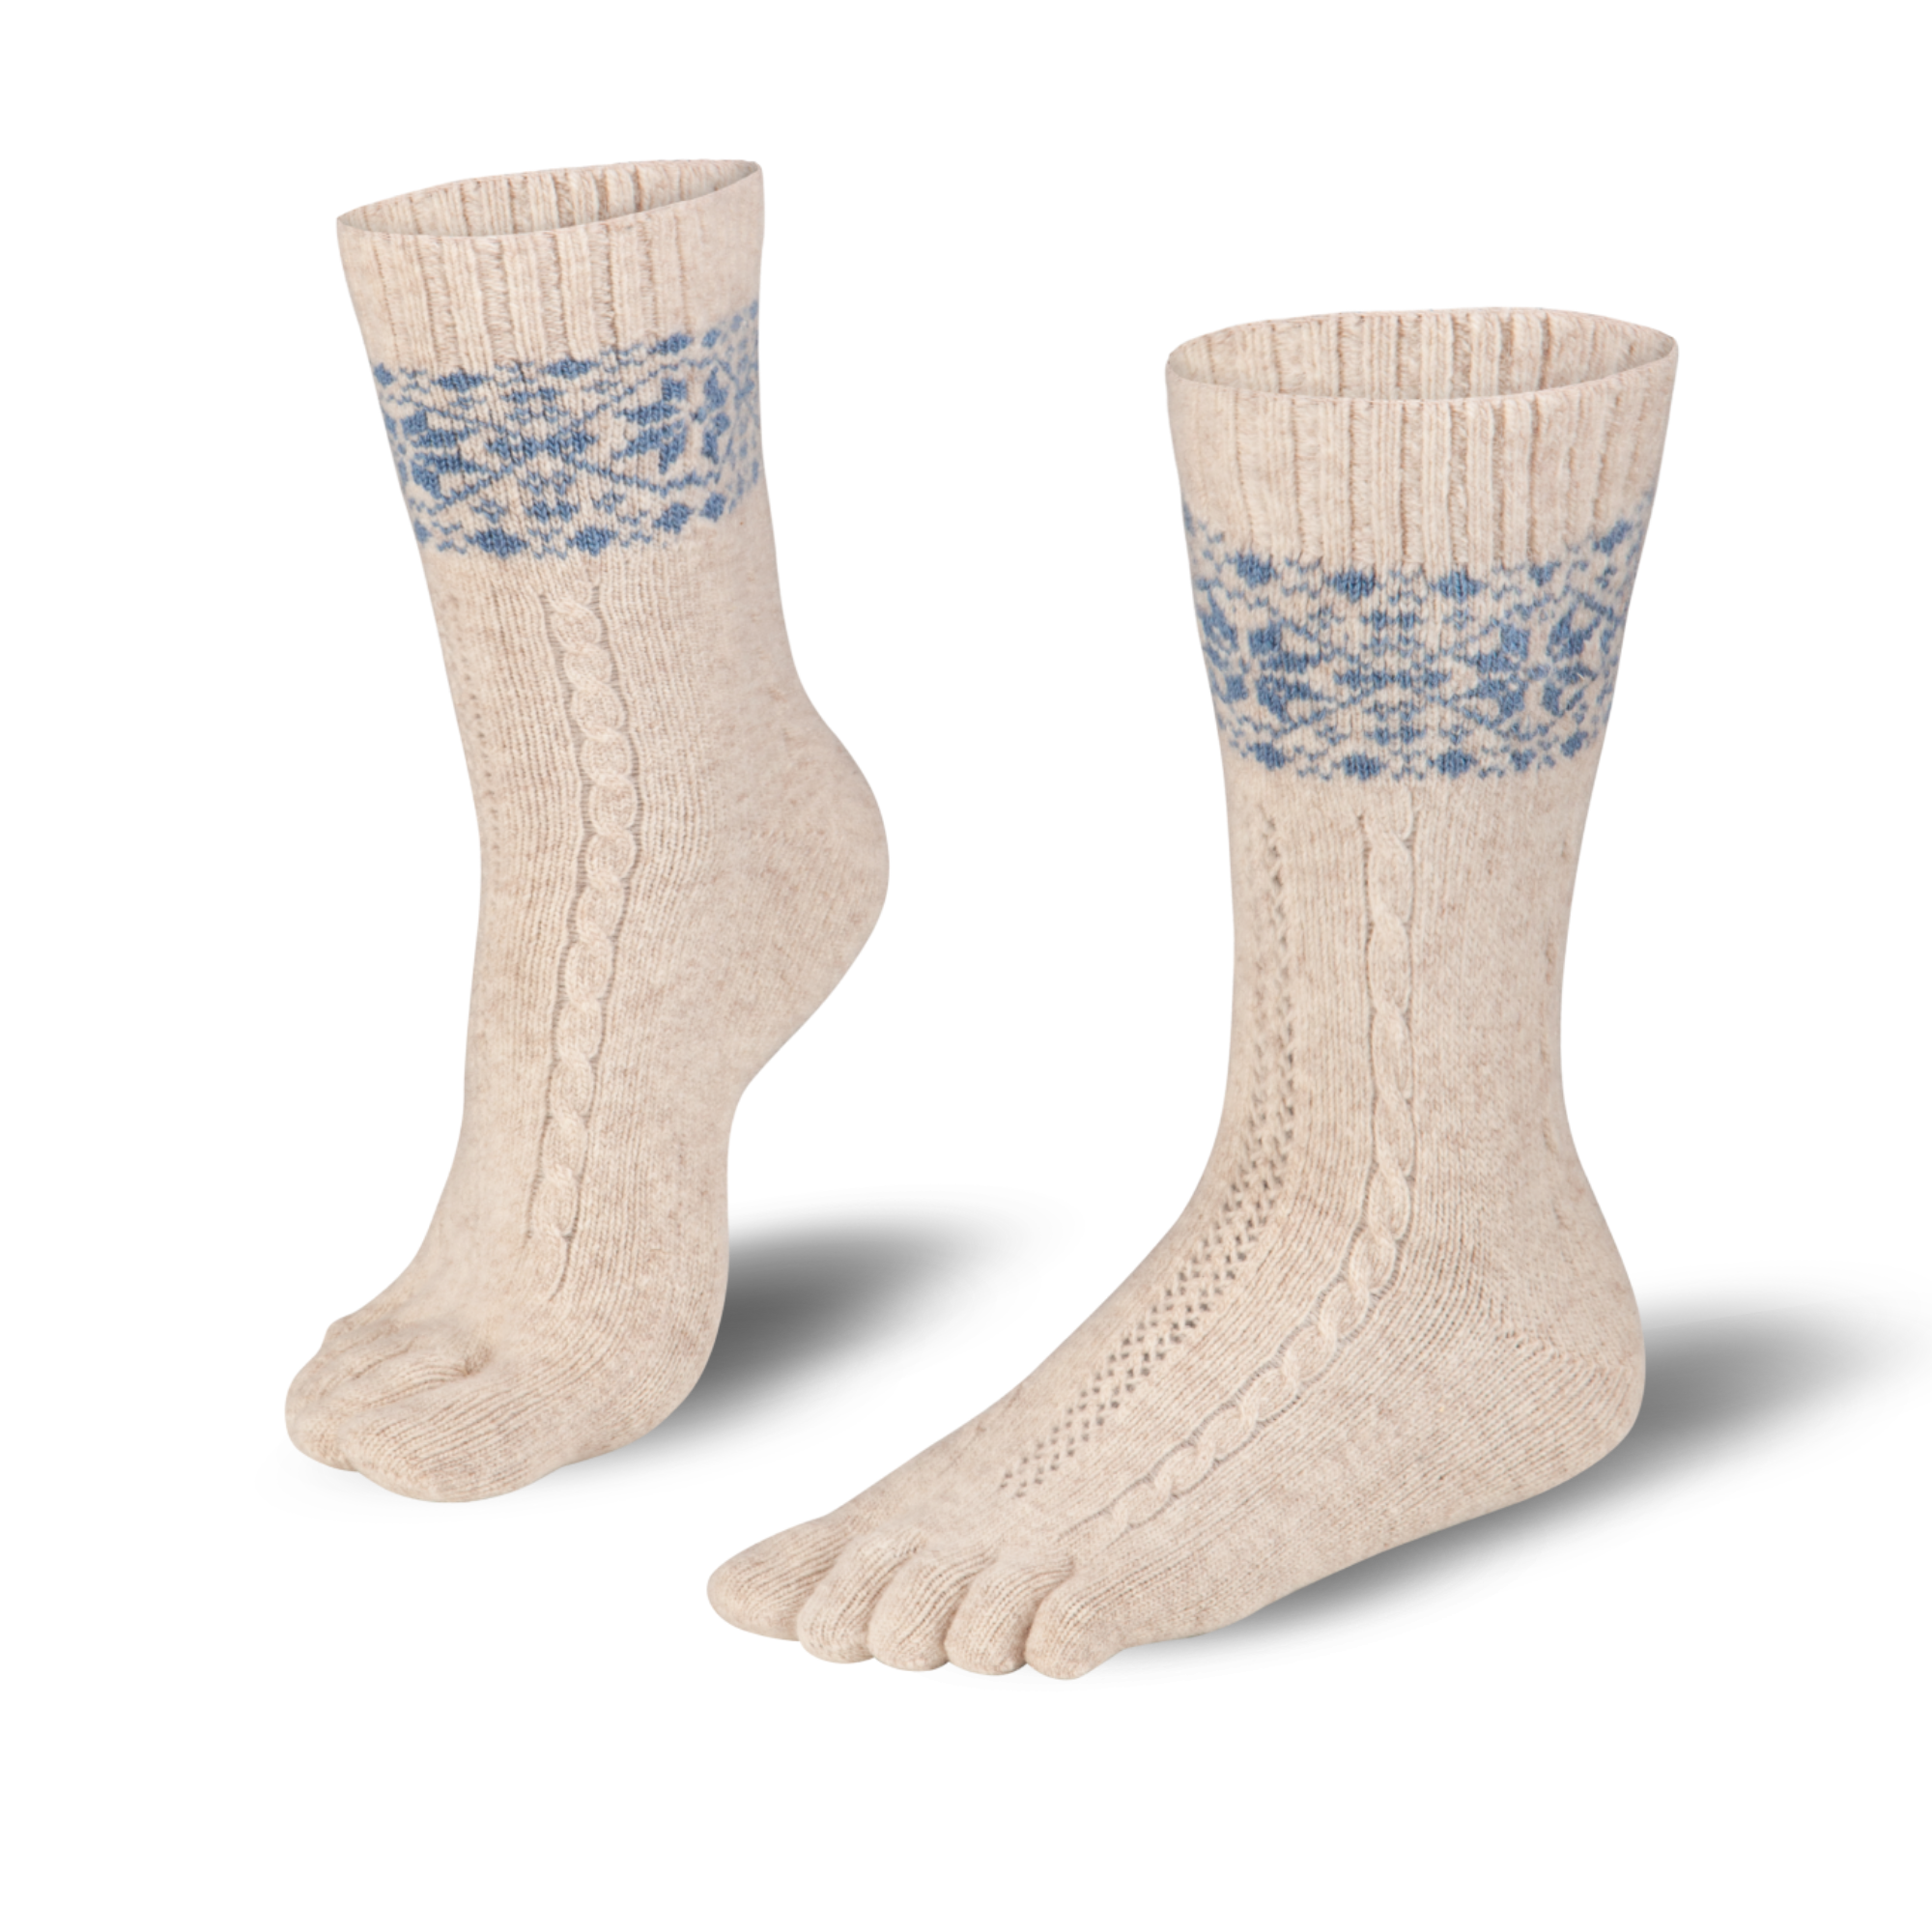  Knitido cálidos calcetines de merino y cachemira con estampado de parches de nieve en beige/azul claro